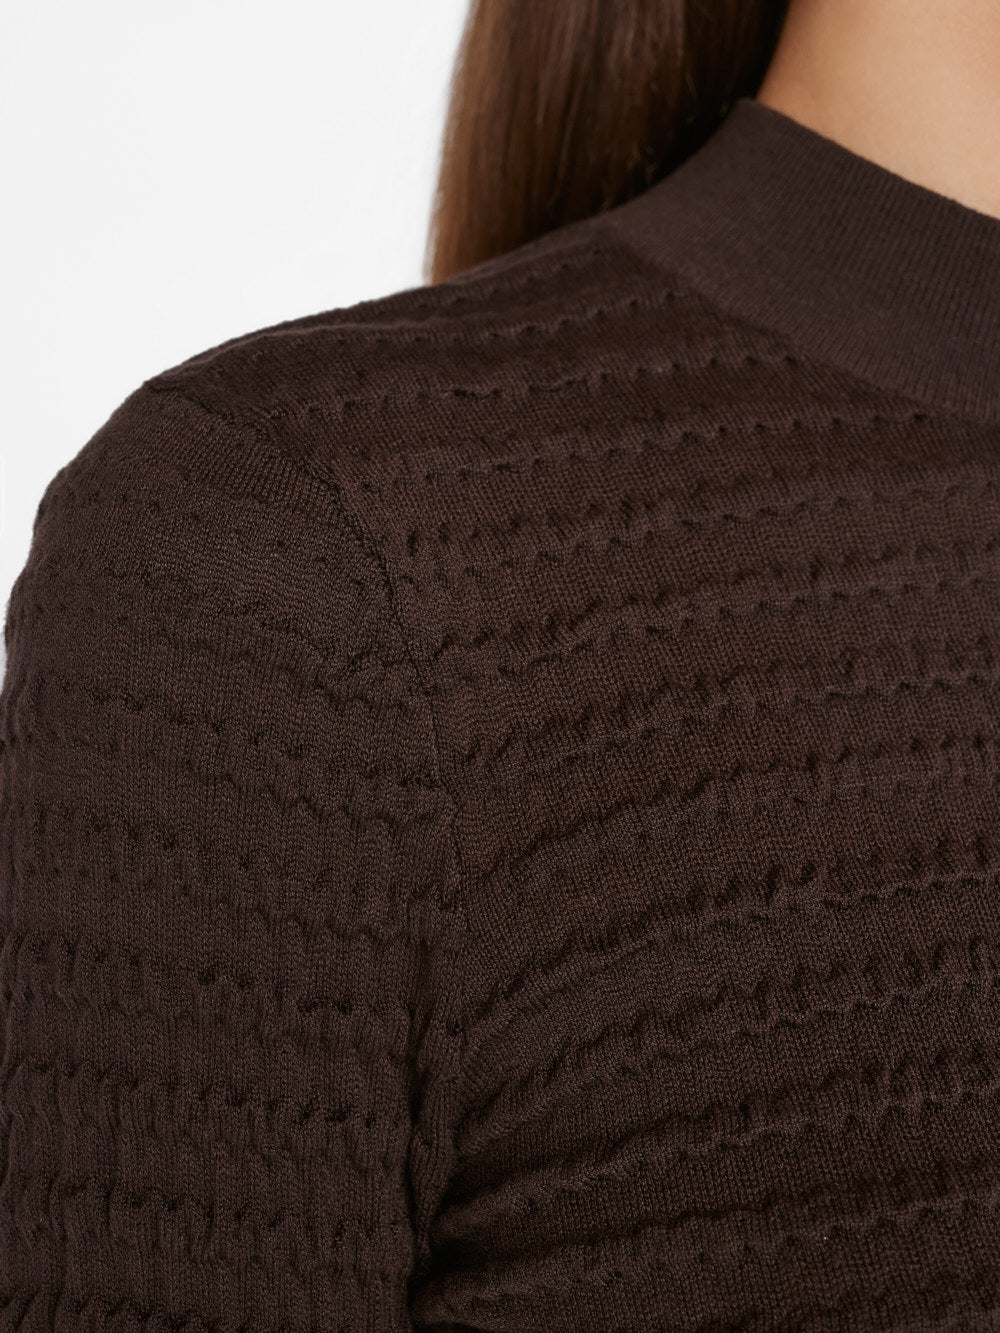 Smocked Mockneck Sweater by Frame